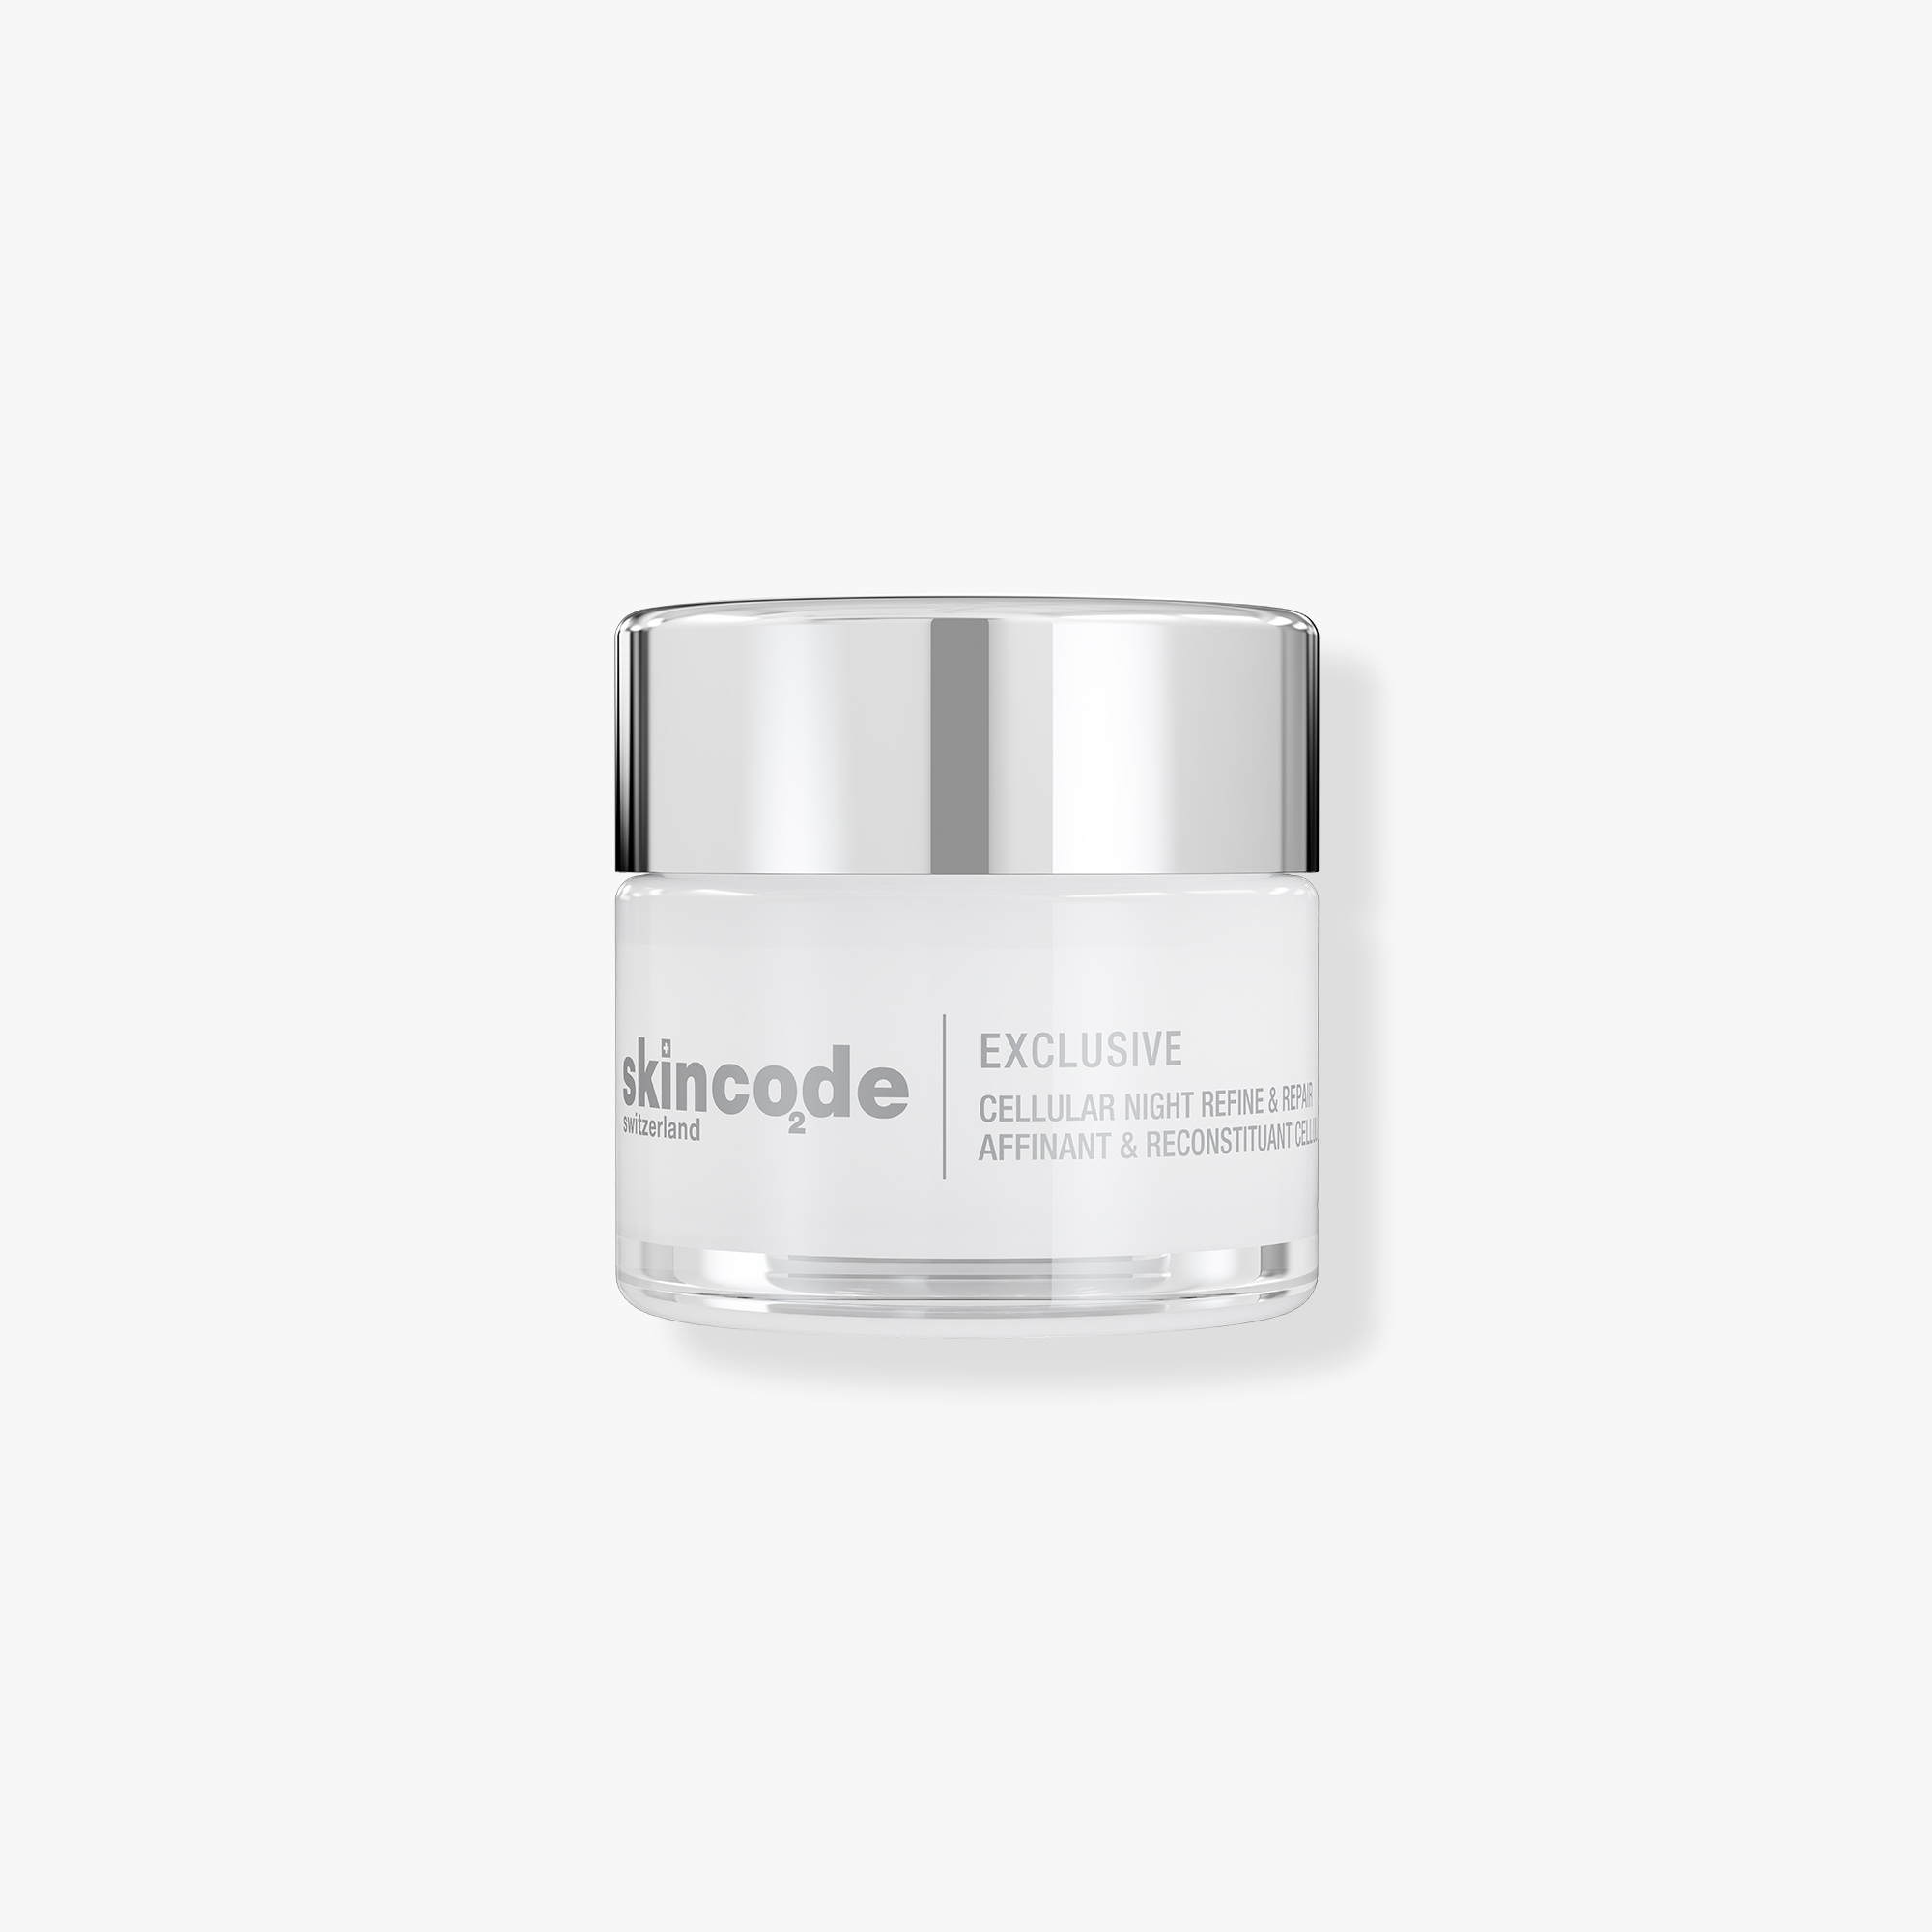 Skincode Cellular Night Refine&Repair Cream, 50ml